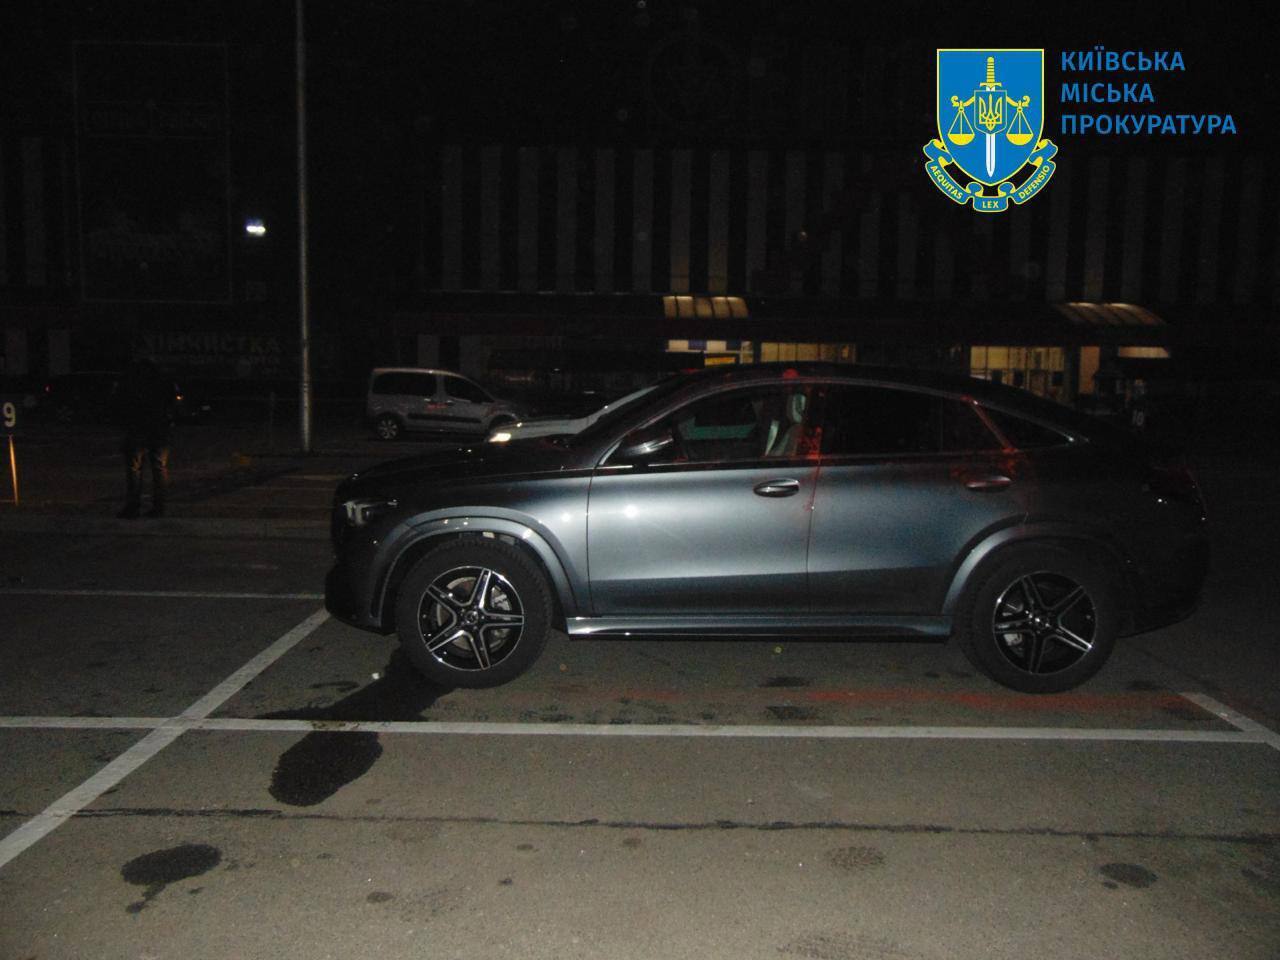 У Києві двоє чоловіків побили власника та намагались викрасти авто з парковки, аби продати і втекти за кордон